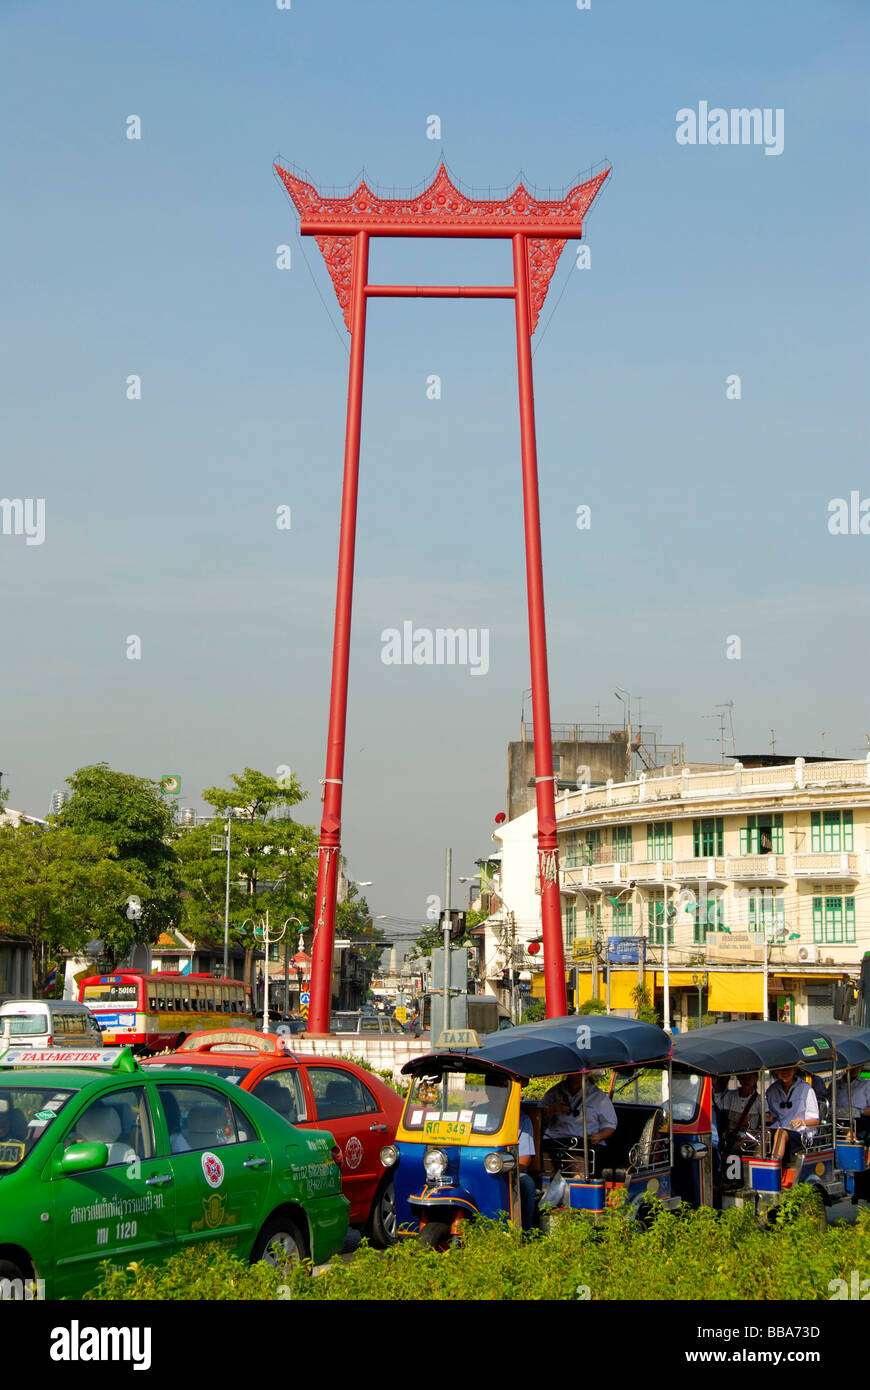 Big Red Swing Swing gigante e colorati di vetture e Tuk Tuks davanti, Bangkok, Thailandia, Sud-est asiatico Foto Stock